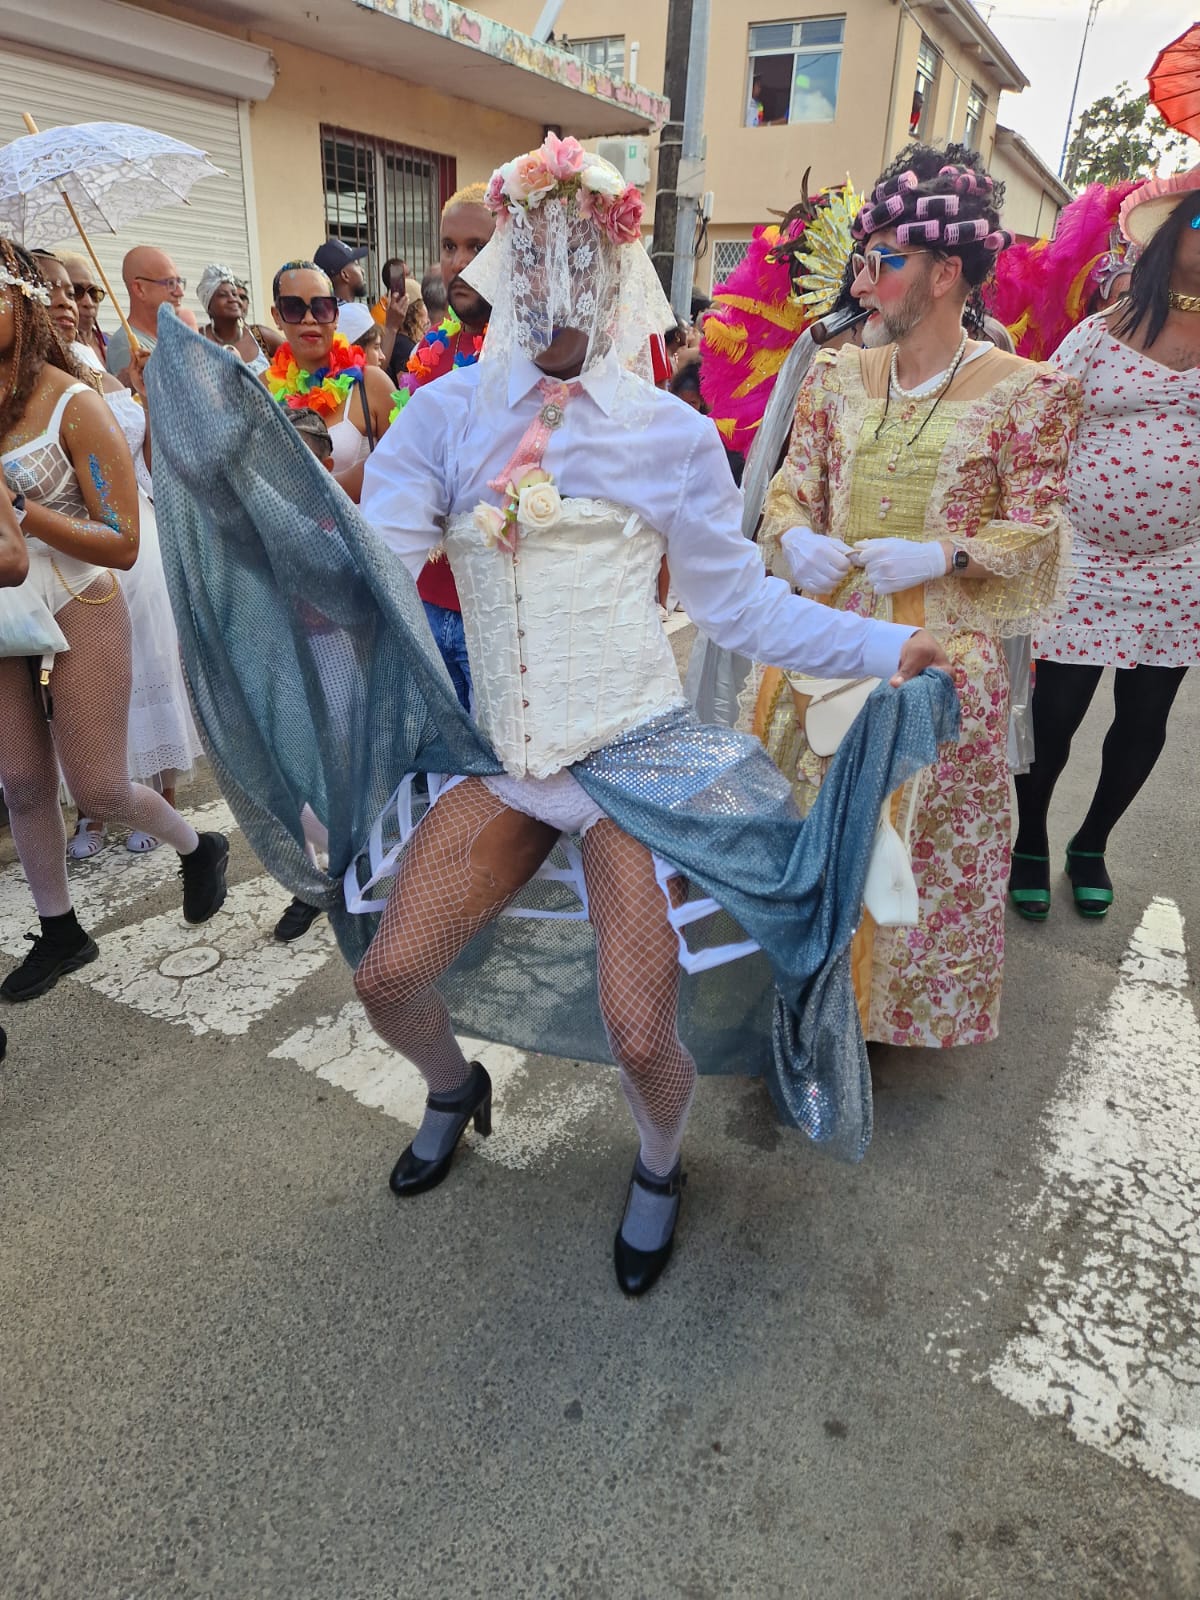 [EN IMAGES] Une Grande Parade du Sud à Sainte-Luce colorée et conviviale